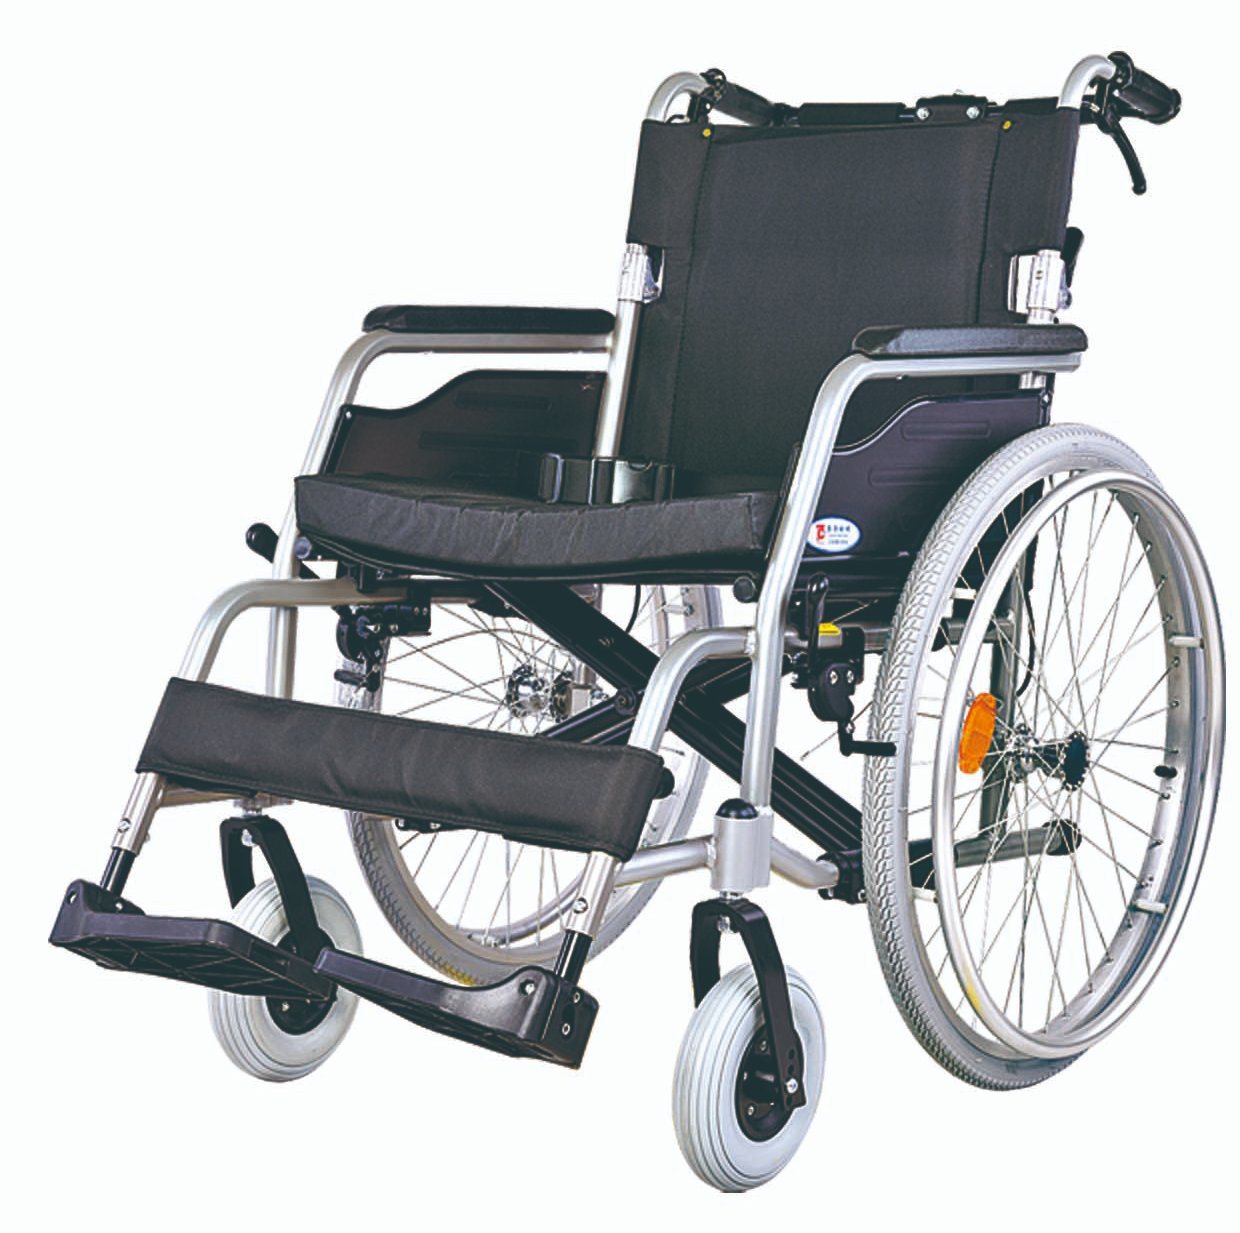 cadeira de rodas para pessoas idosas Imagem em destaque